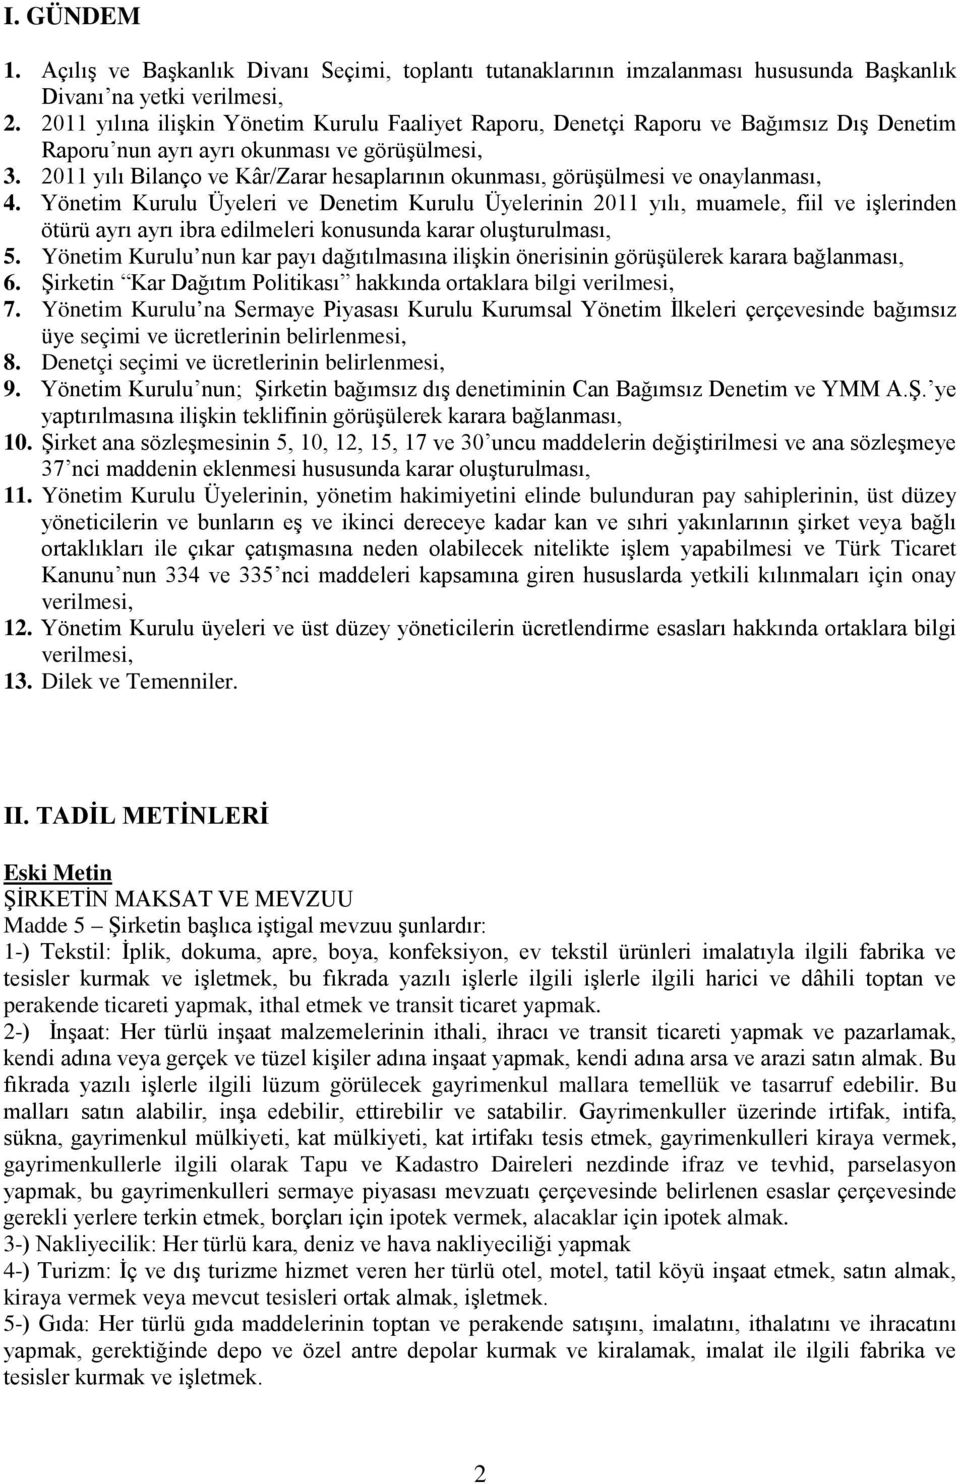 2011 yılı Bilanço ve Kâr/Zarar hesaplarının okunması, görüşülmesi ve onaylanması, 4.